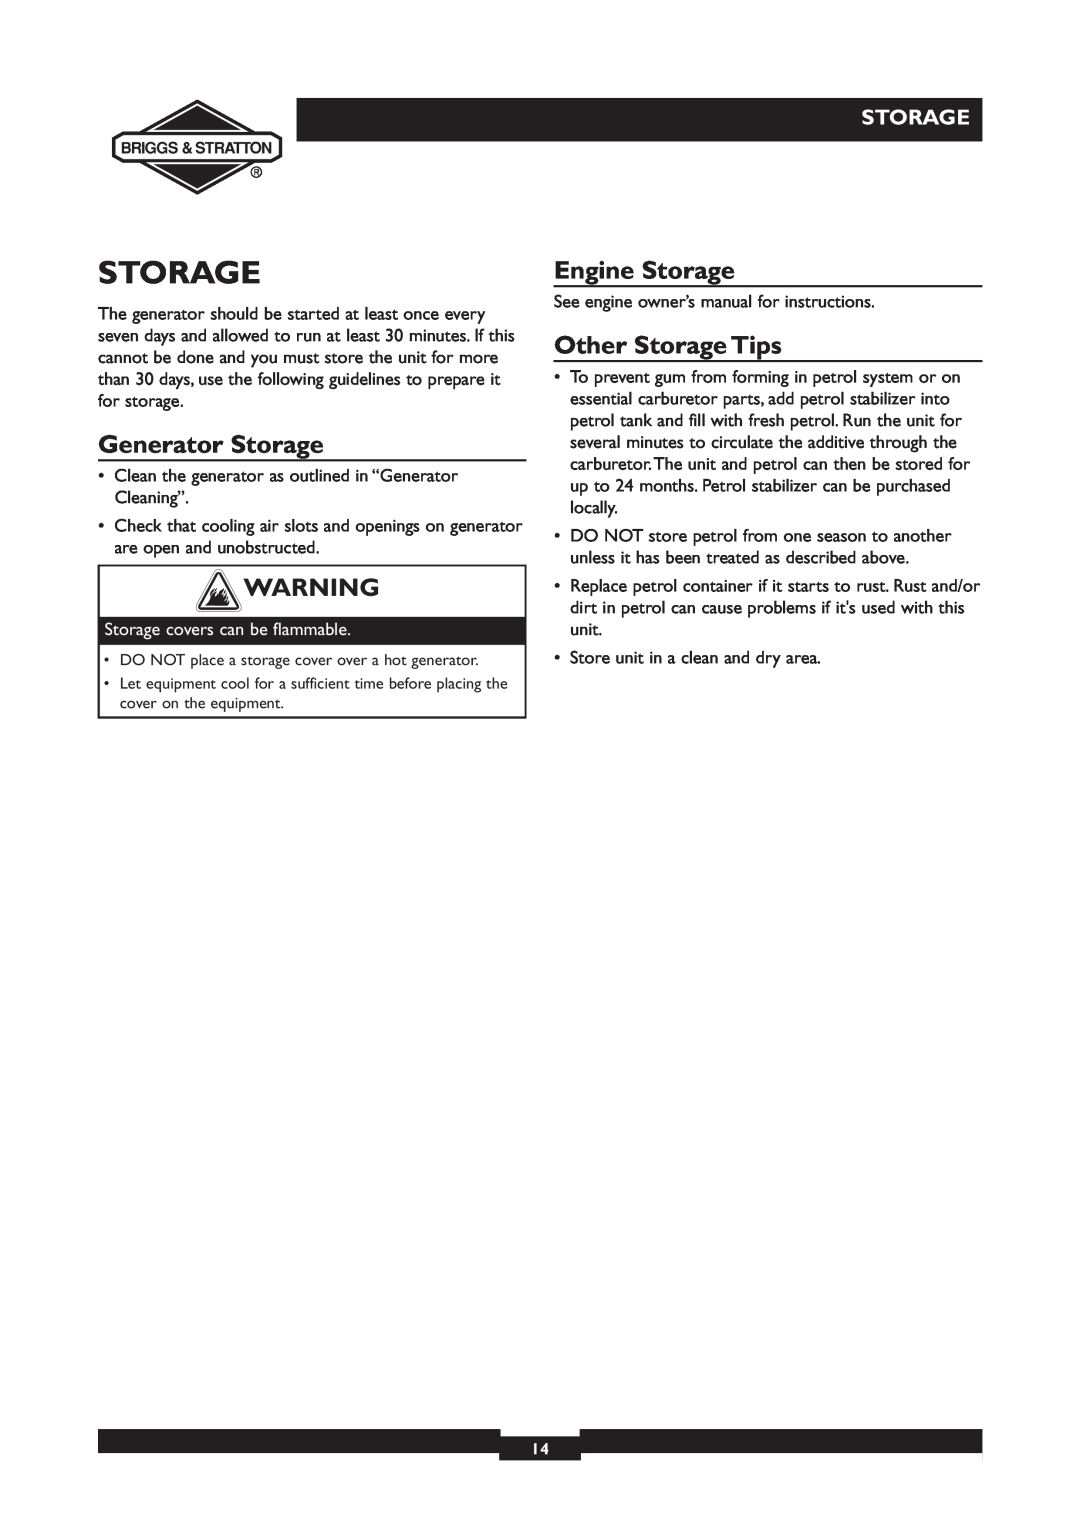 Briggs & Stratton 30231 manual Generator Storage, Engine Storage, Other Storage Tips 